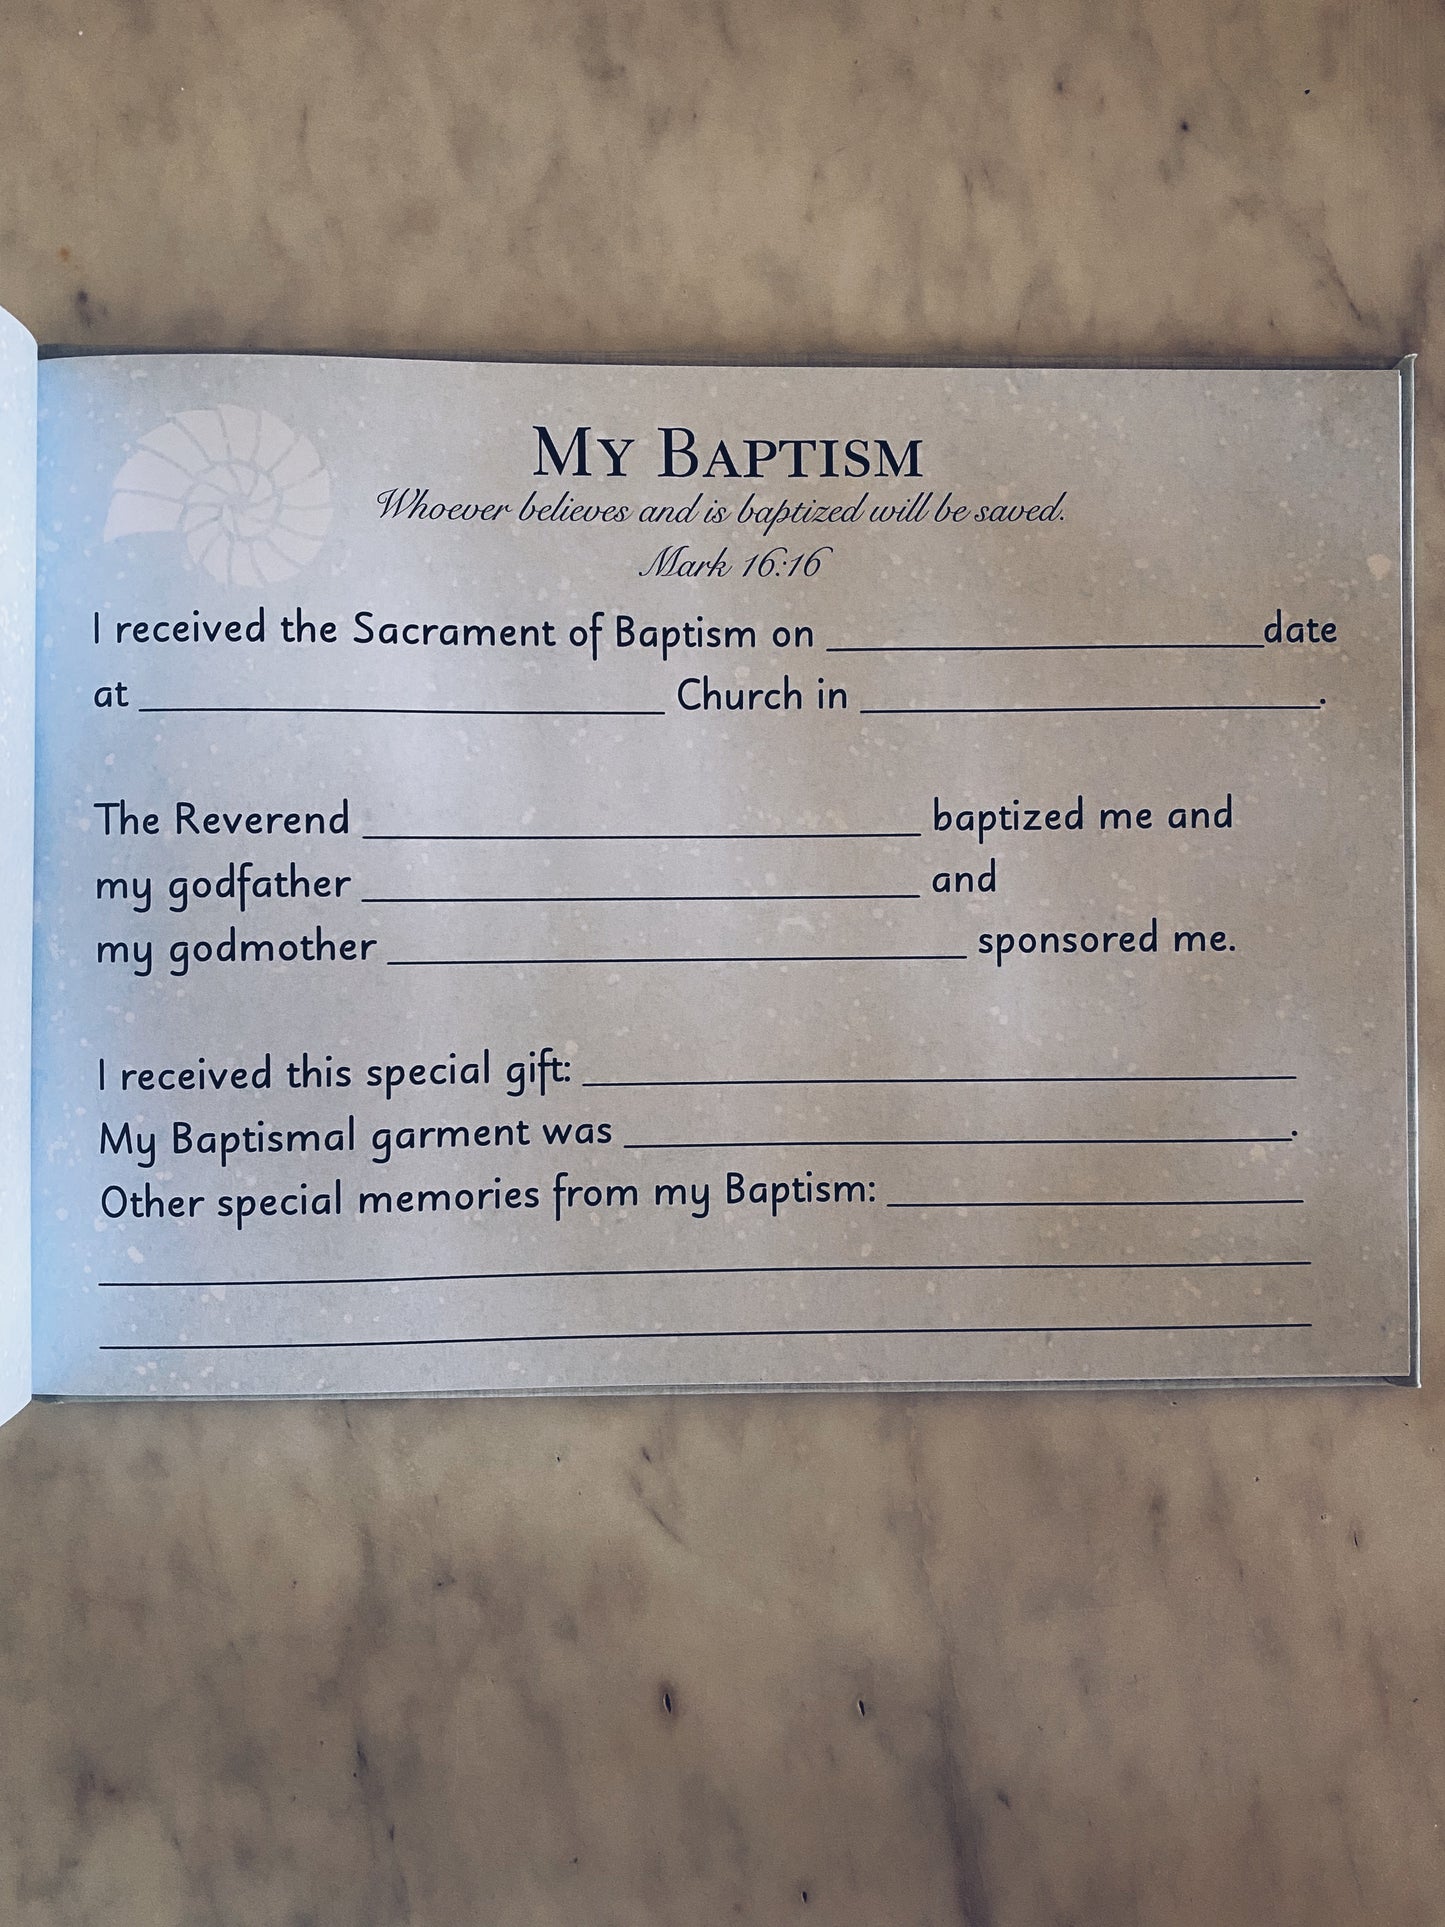 Adoption Catholic Baby Book